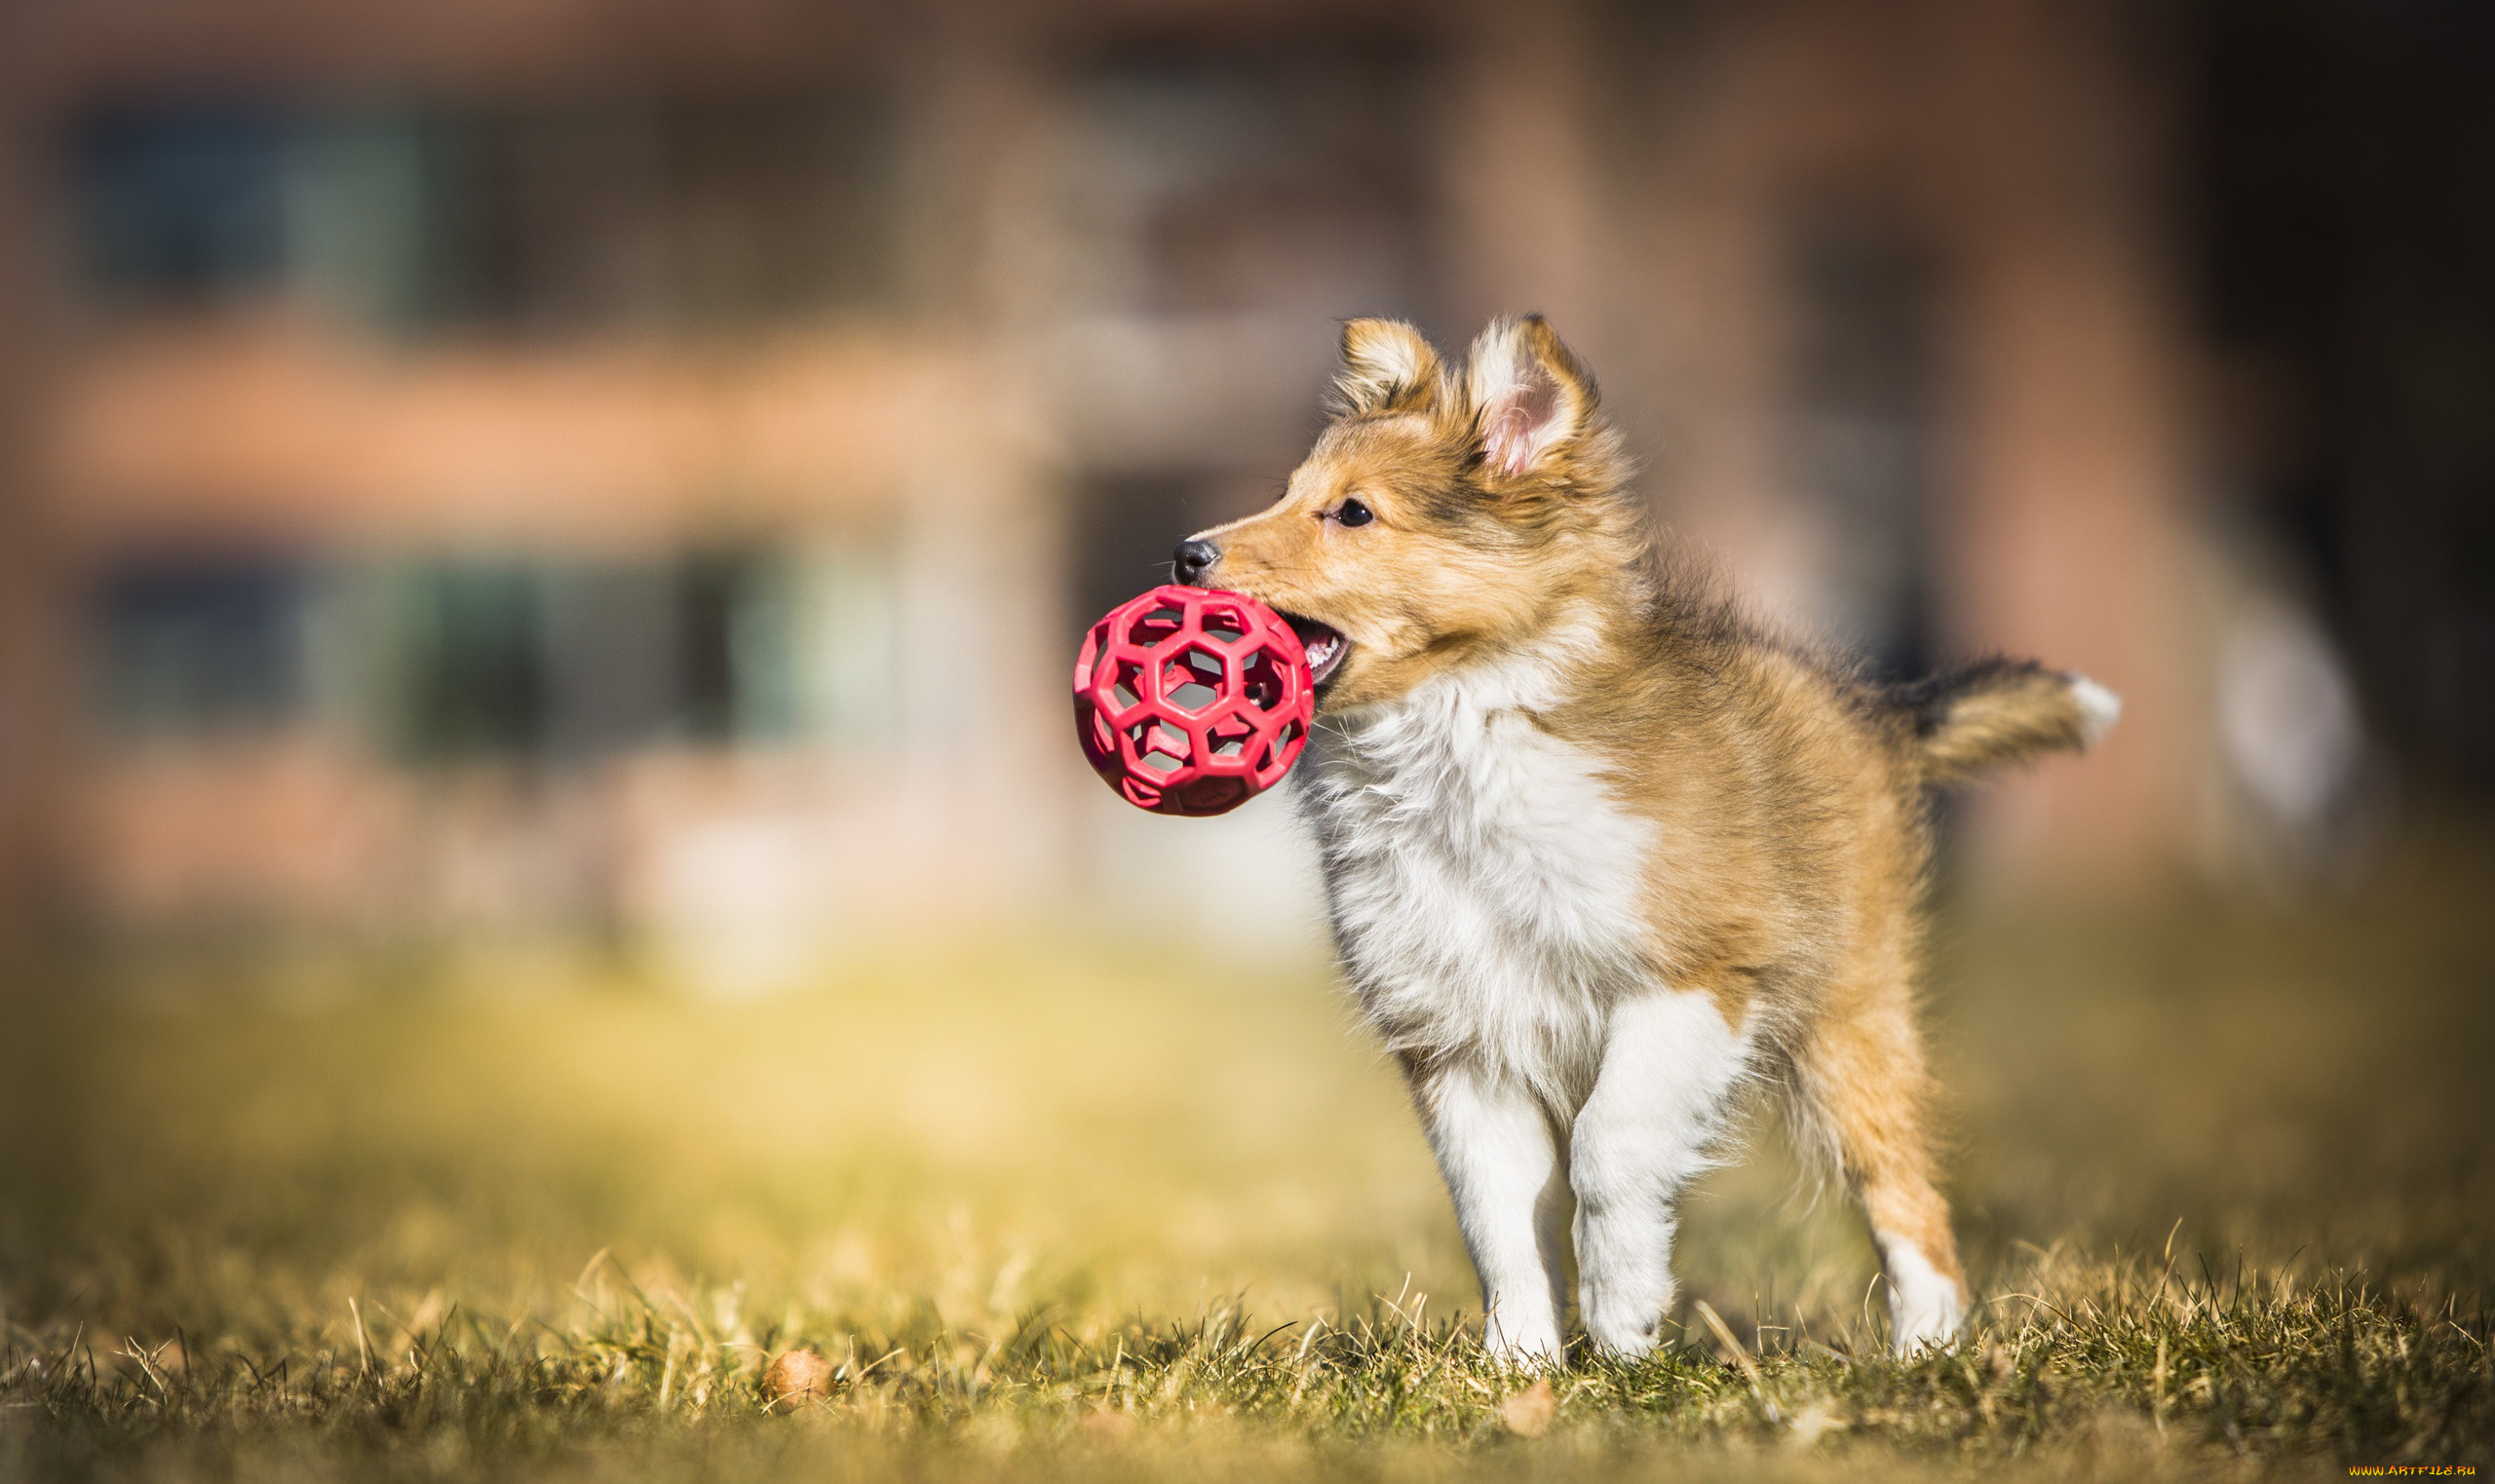 Игрушка щенок интерактивный в голубом шарфике с поводком купить по цене 1 руб